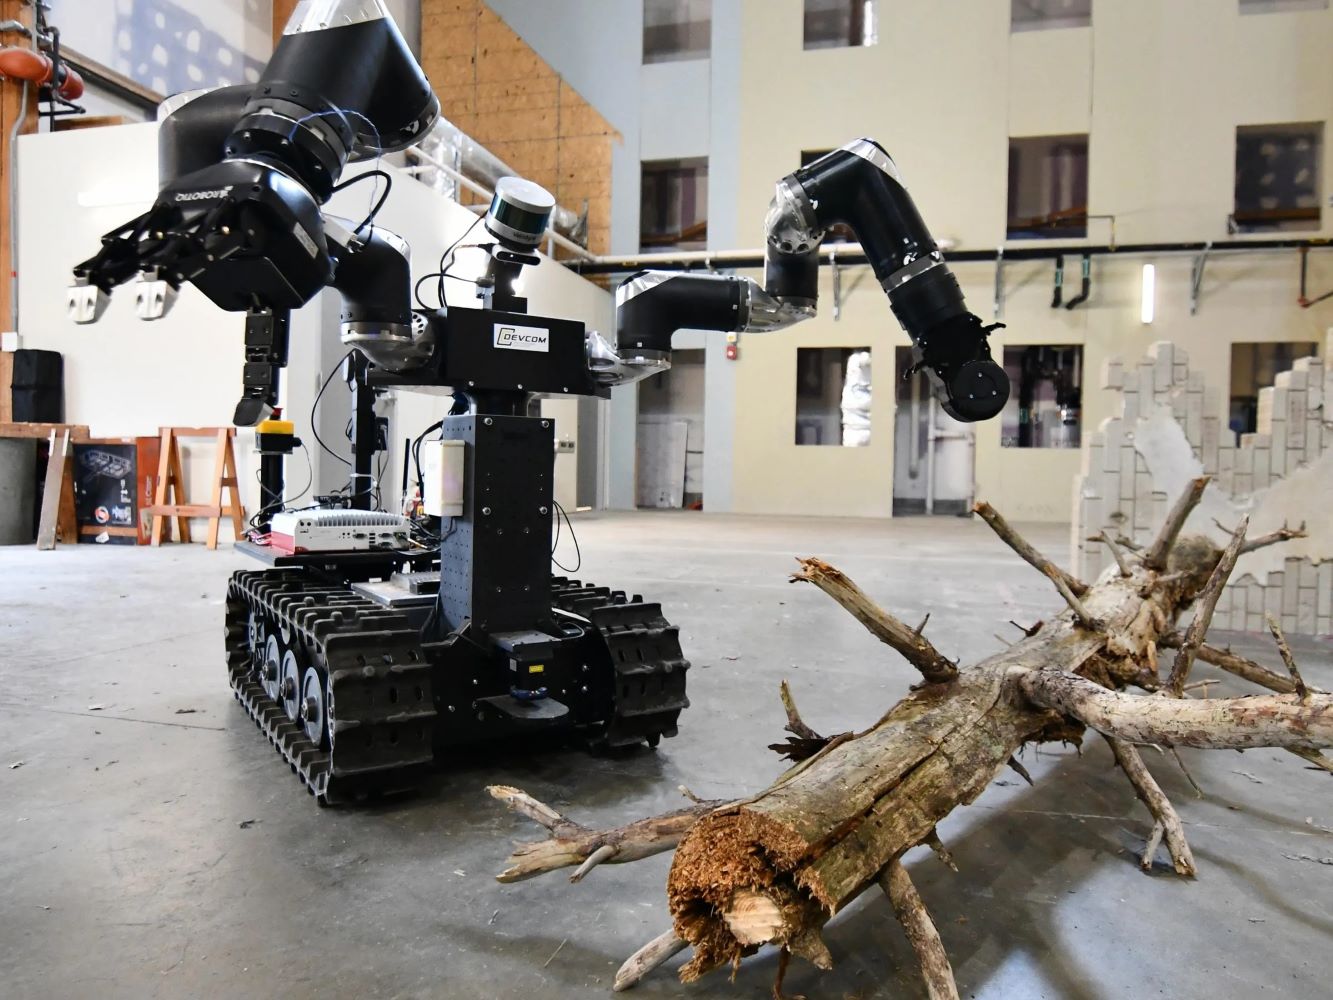 robot-roman-cua-phong-thi-nghiem-nghien-cuu-quan-doi-dang-tim-cach-nam-canh-cay-tai-alc-maryland.jpg